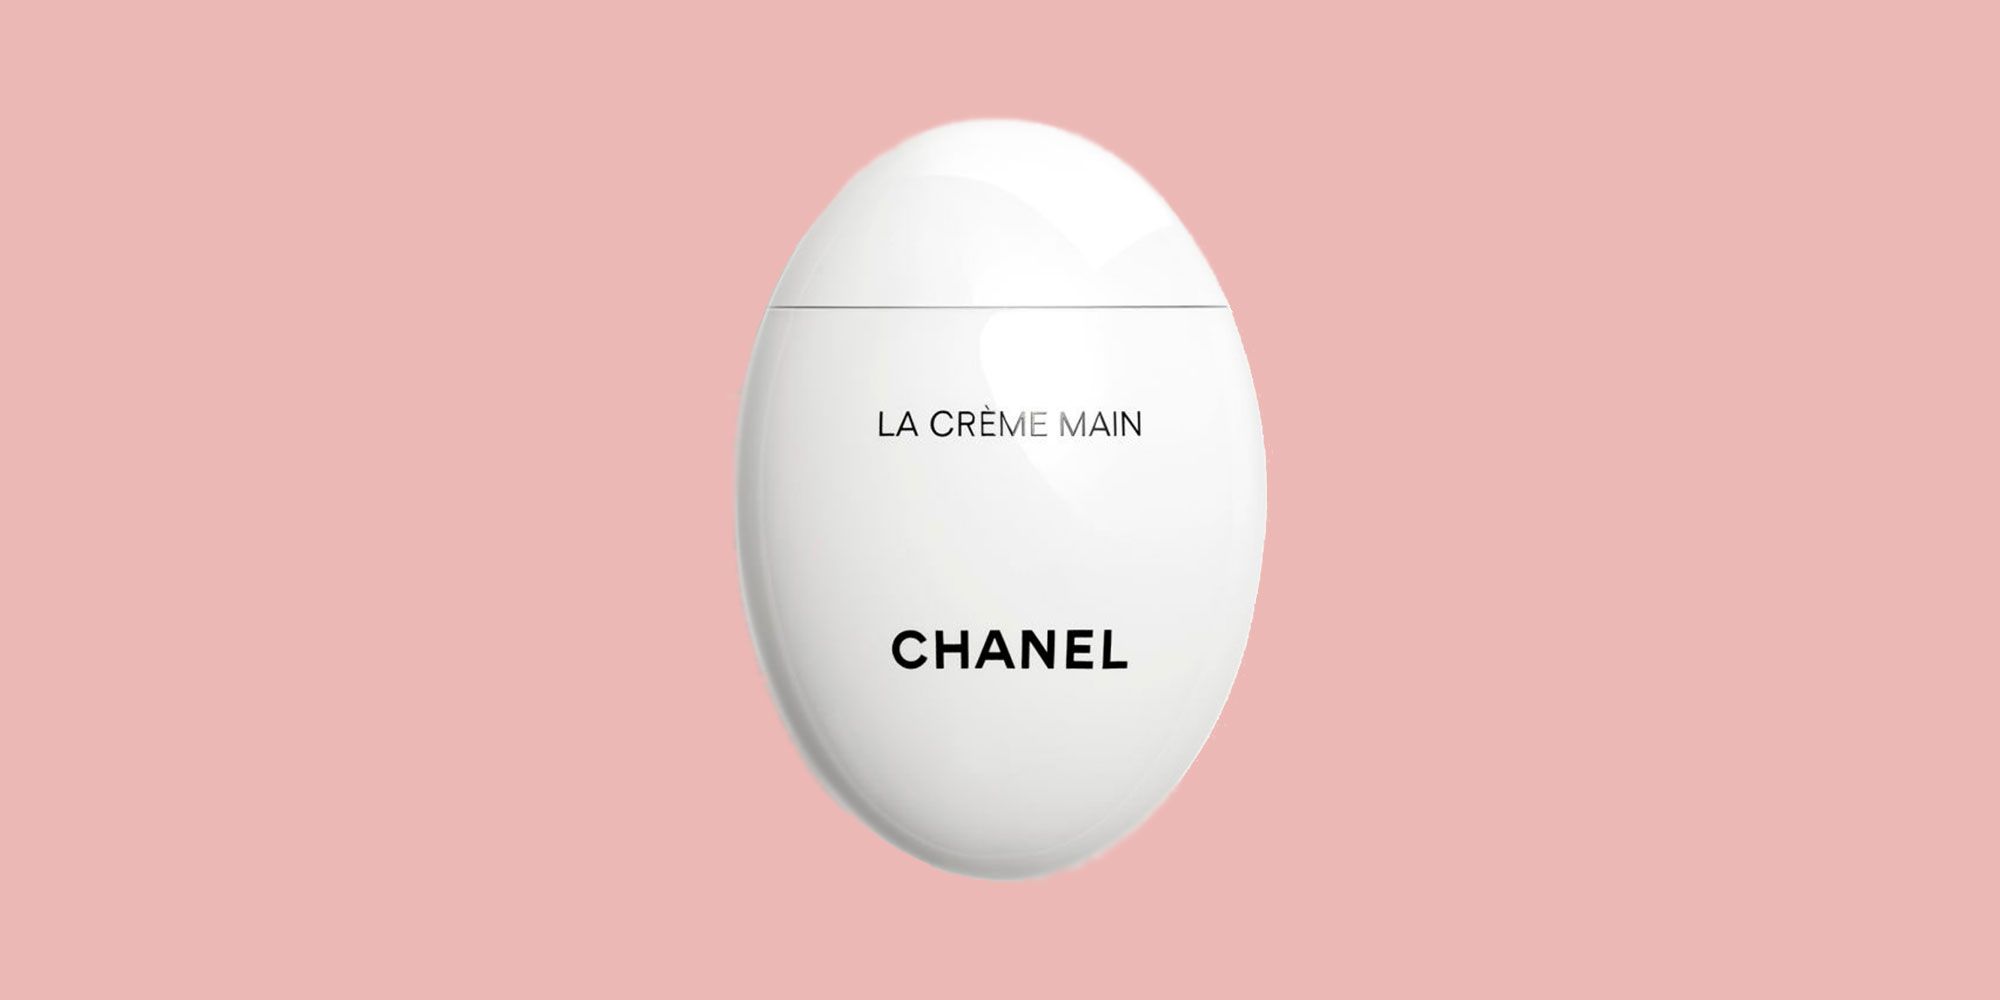 Chanel La Crème Main Review